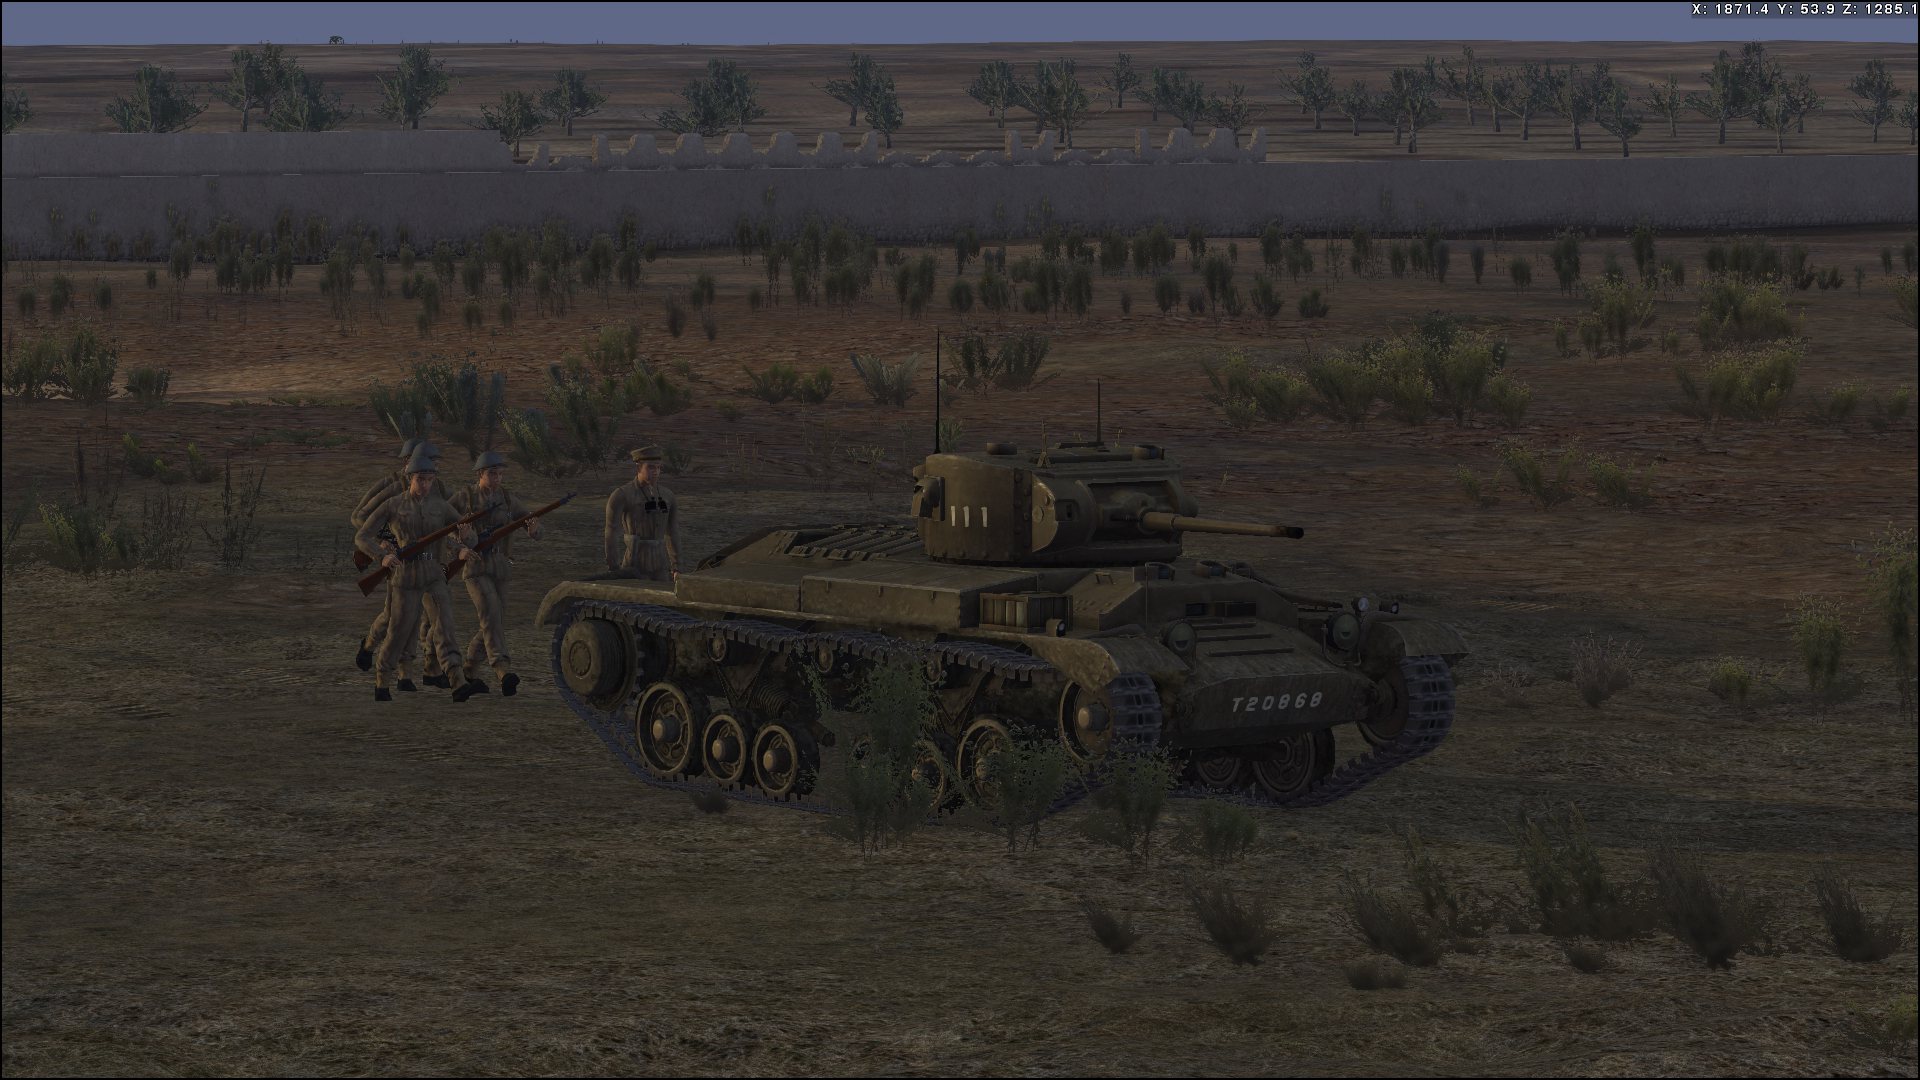 Tank Warfare - Operation Pugilist DLC Steam CD Key